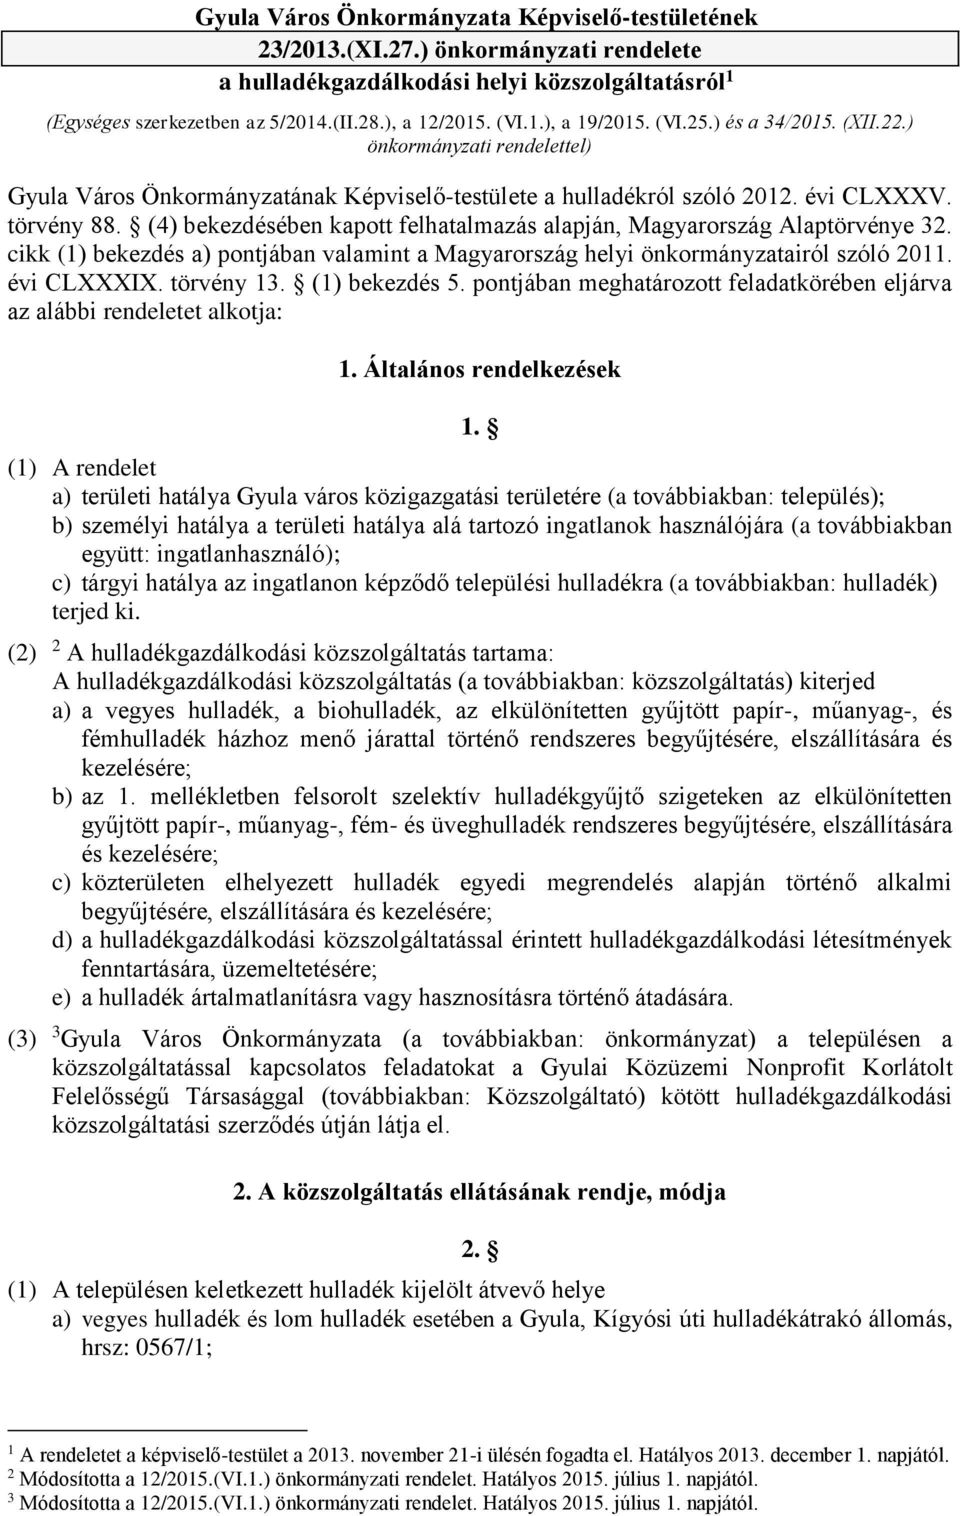 (4) bekezdésében kapott felhatalmazás alapján, Magyarország Alaptörvénye 32. cikk (1) bekezdés a) pontjában valamint a Magyarország helyi önkormányzatairól szóló 2011. évi CLXXXIX. törvény 13.